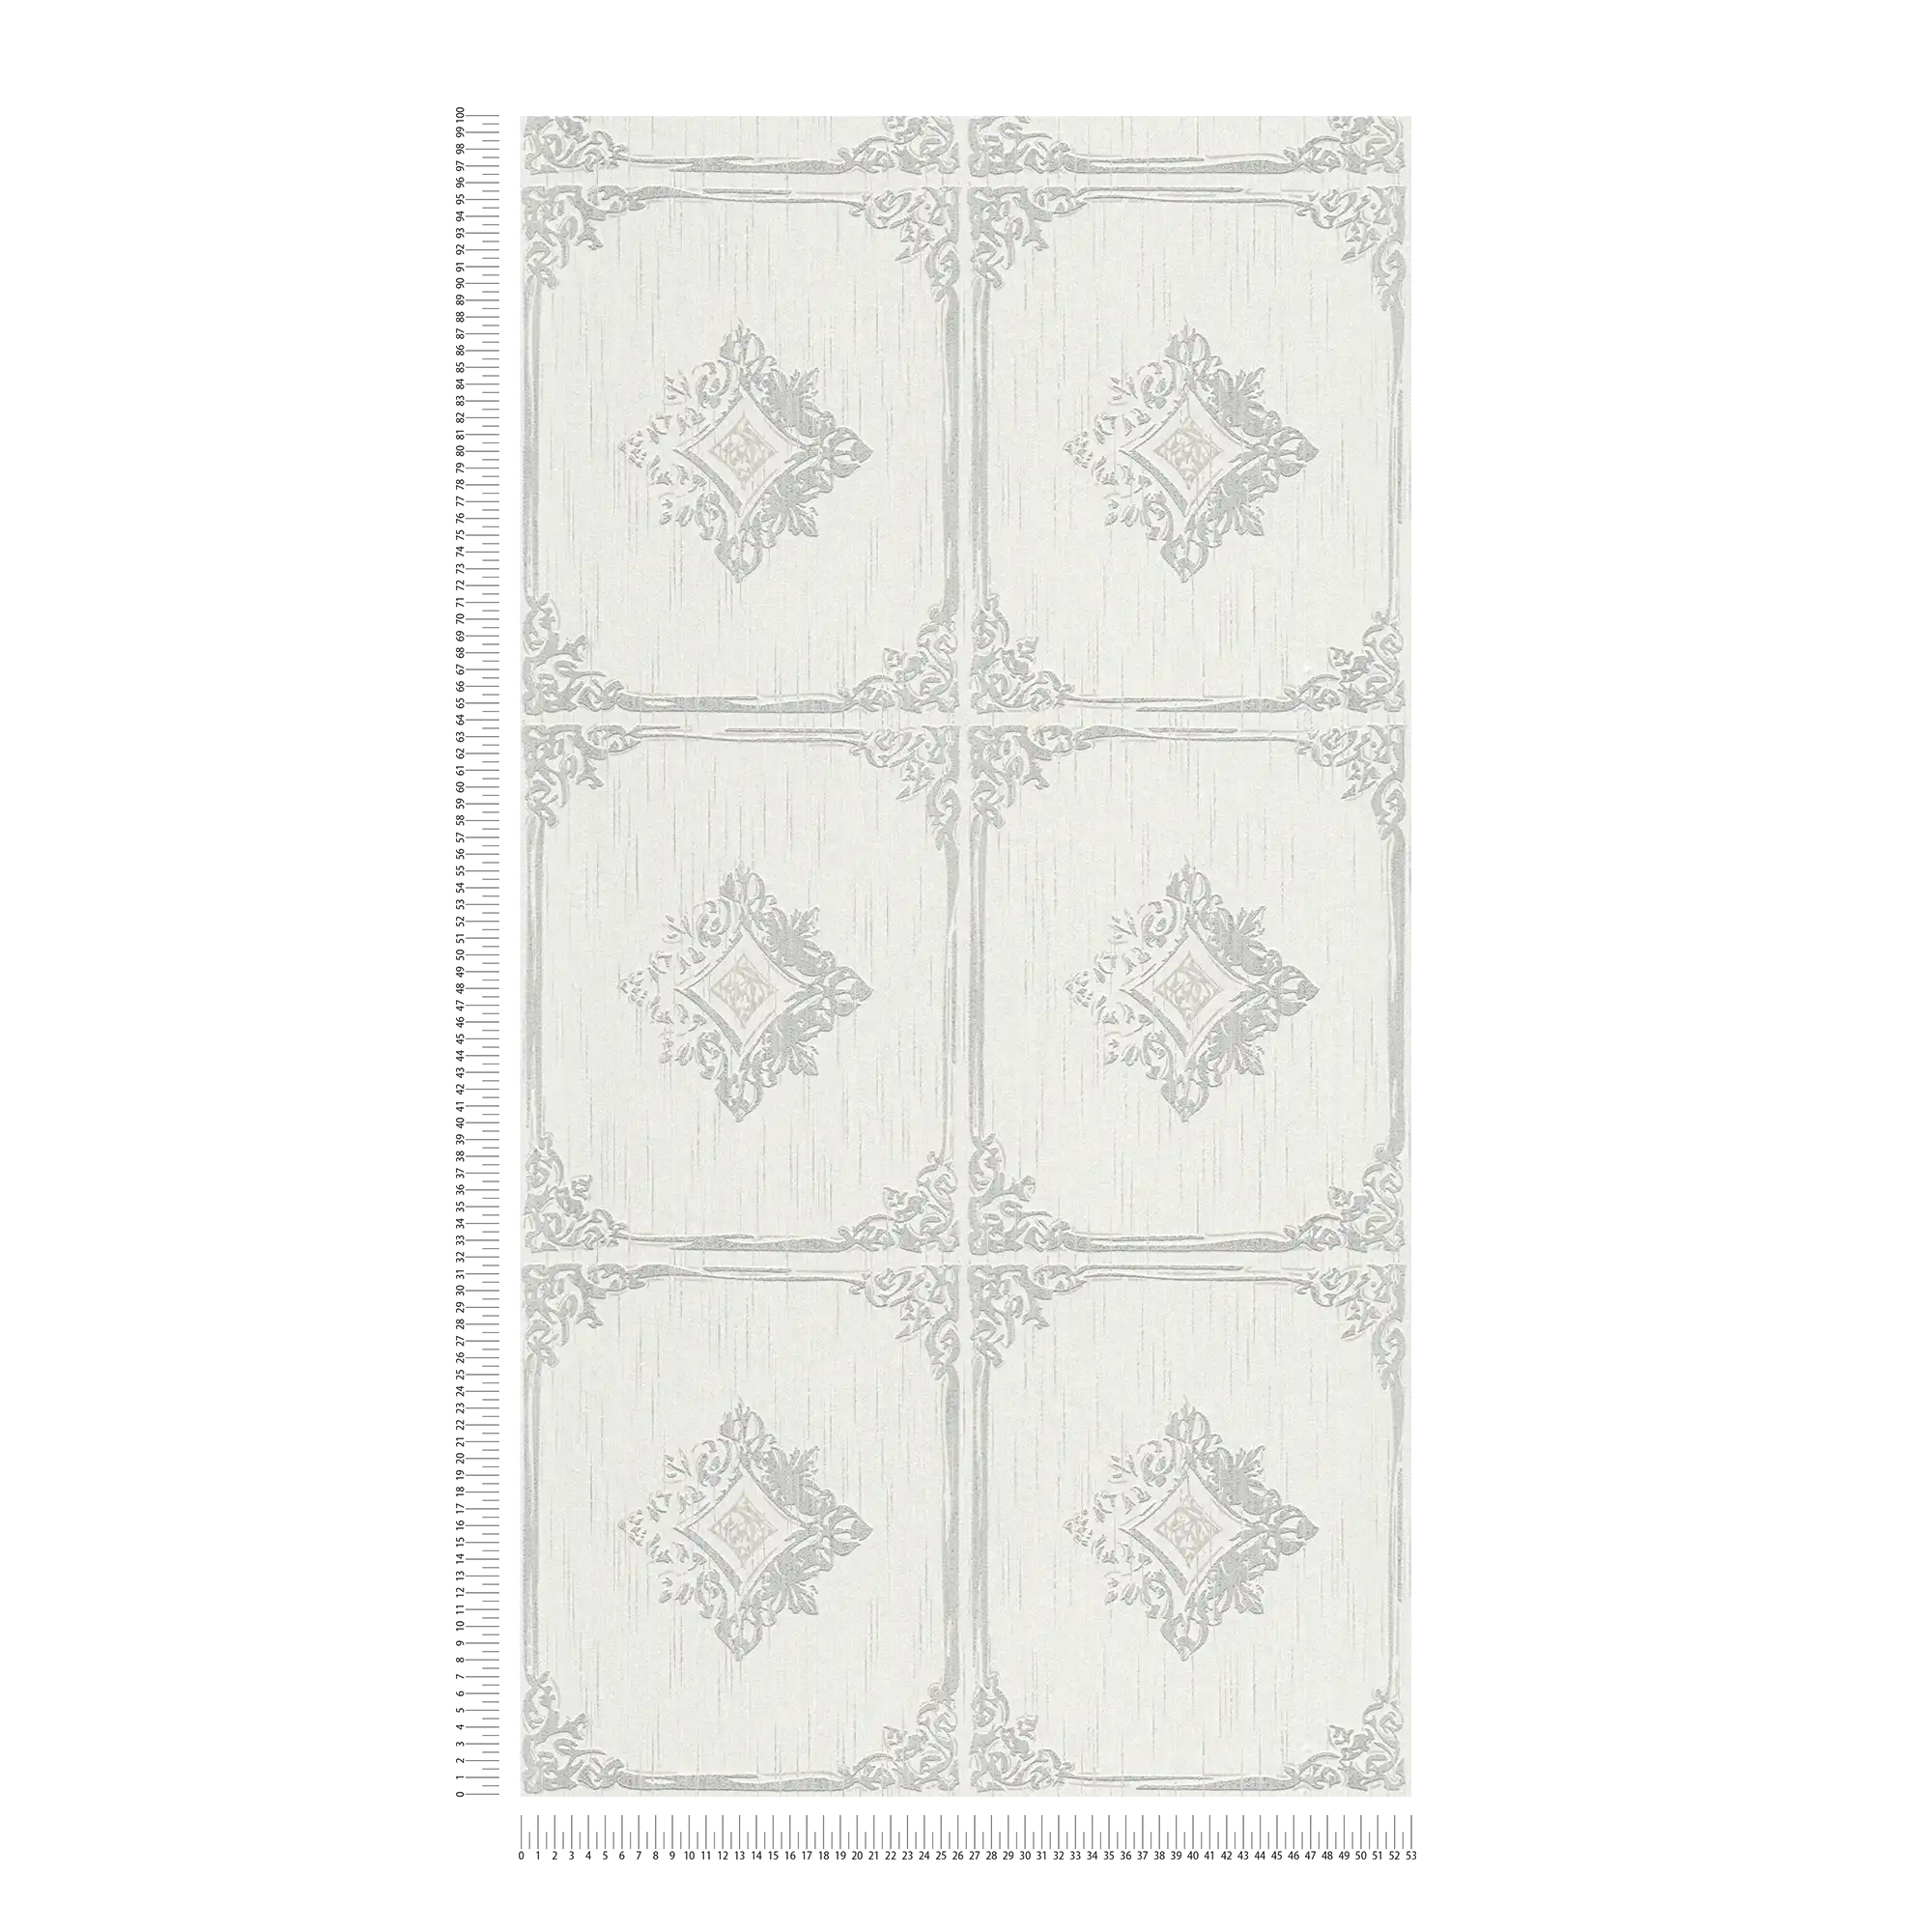             Tapete Vintage Stuck Design mit Ornament Kassetten – Grau, Weiß
        